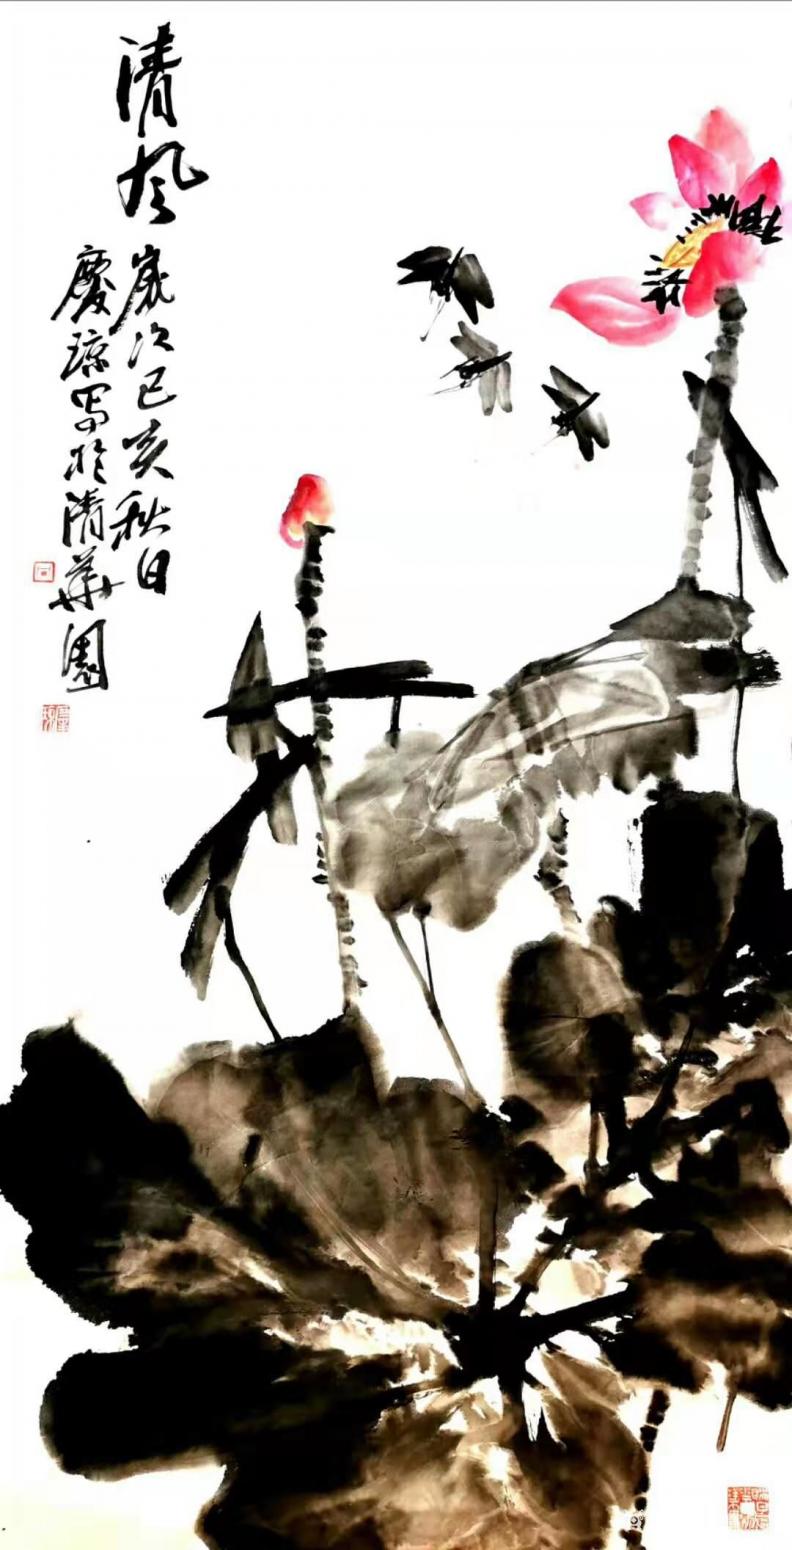 甘庆琼国画作品《荷花蜻蜓-清风》